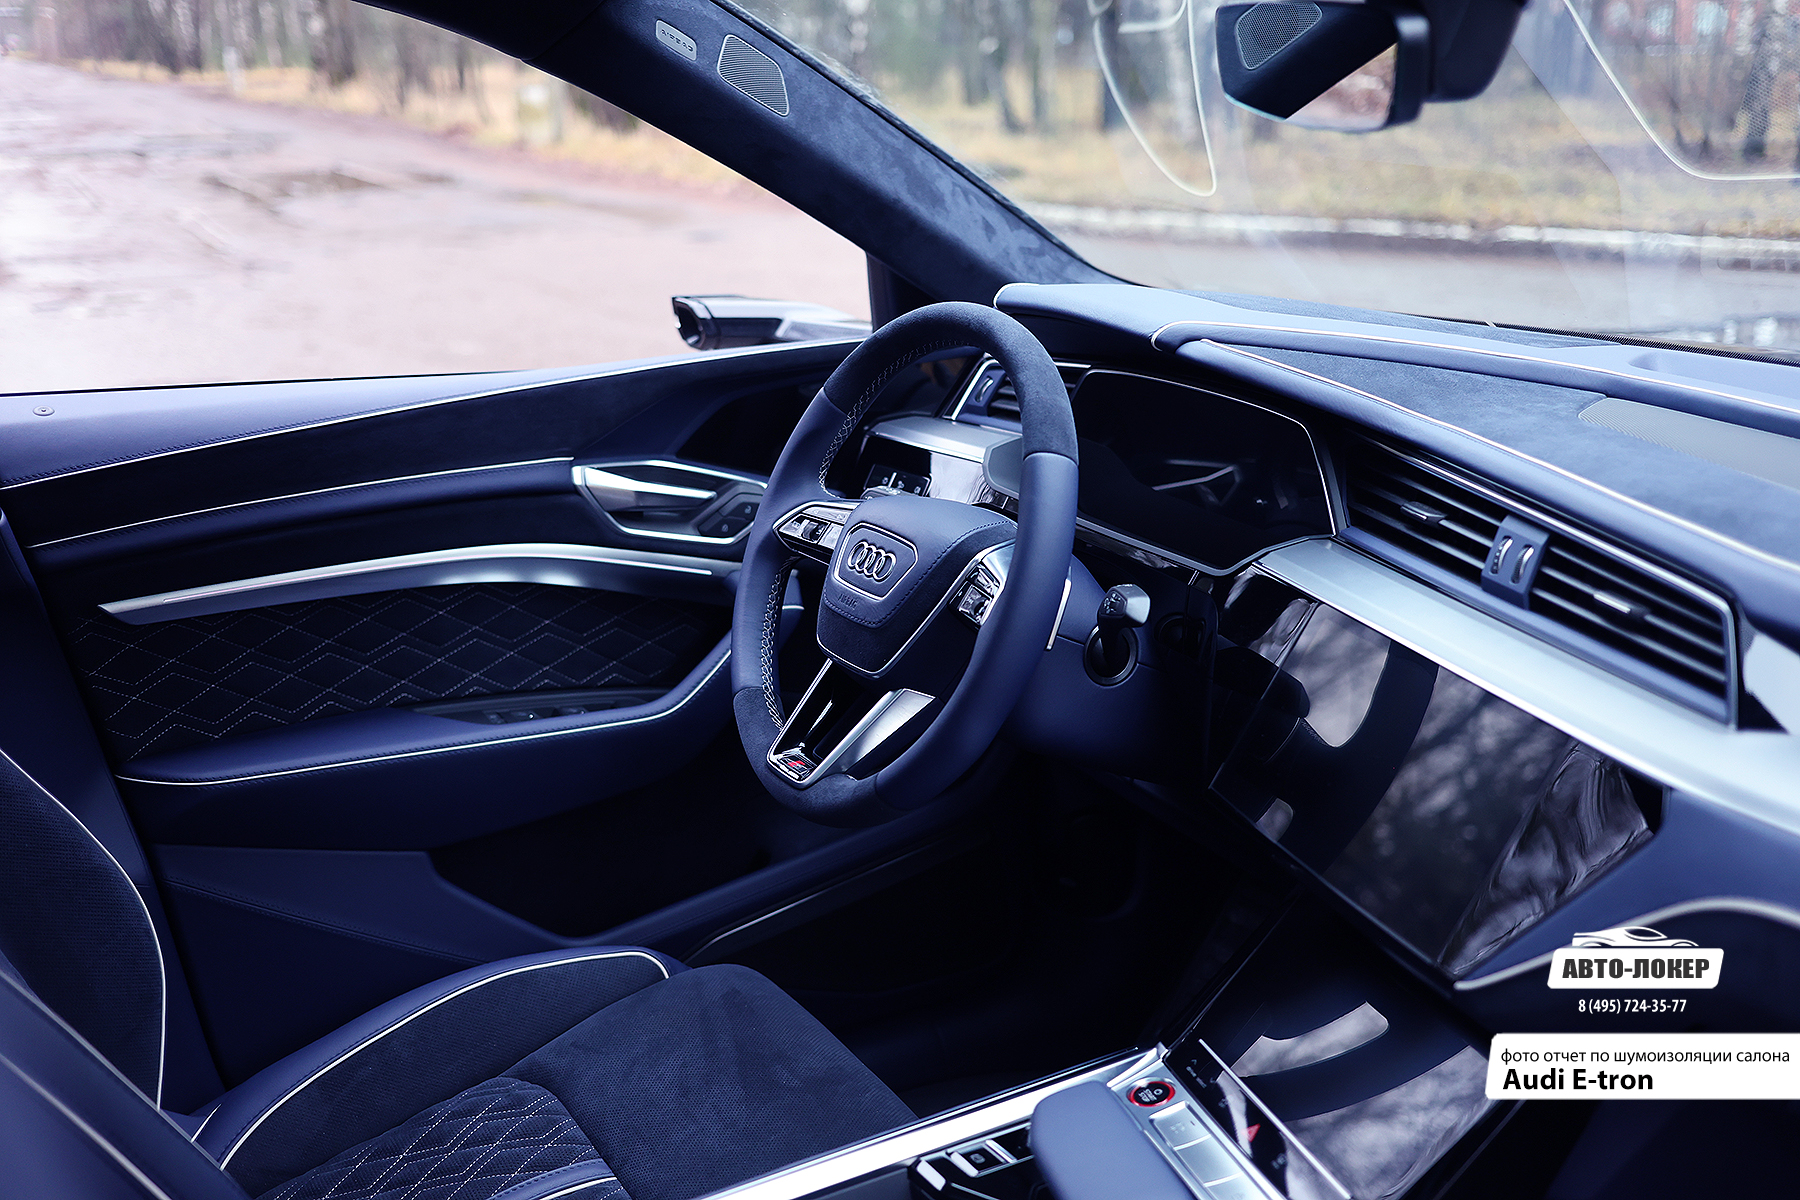 Перетяжка руля и рулевой колонки салона Audi E-tron в натуральную кожу